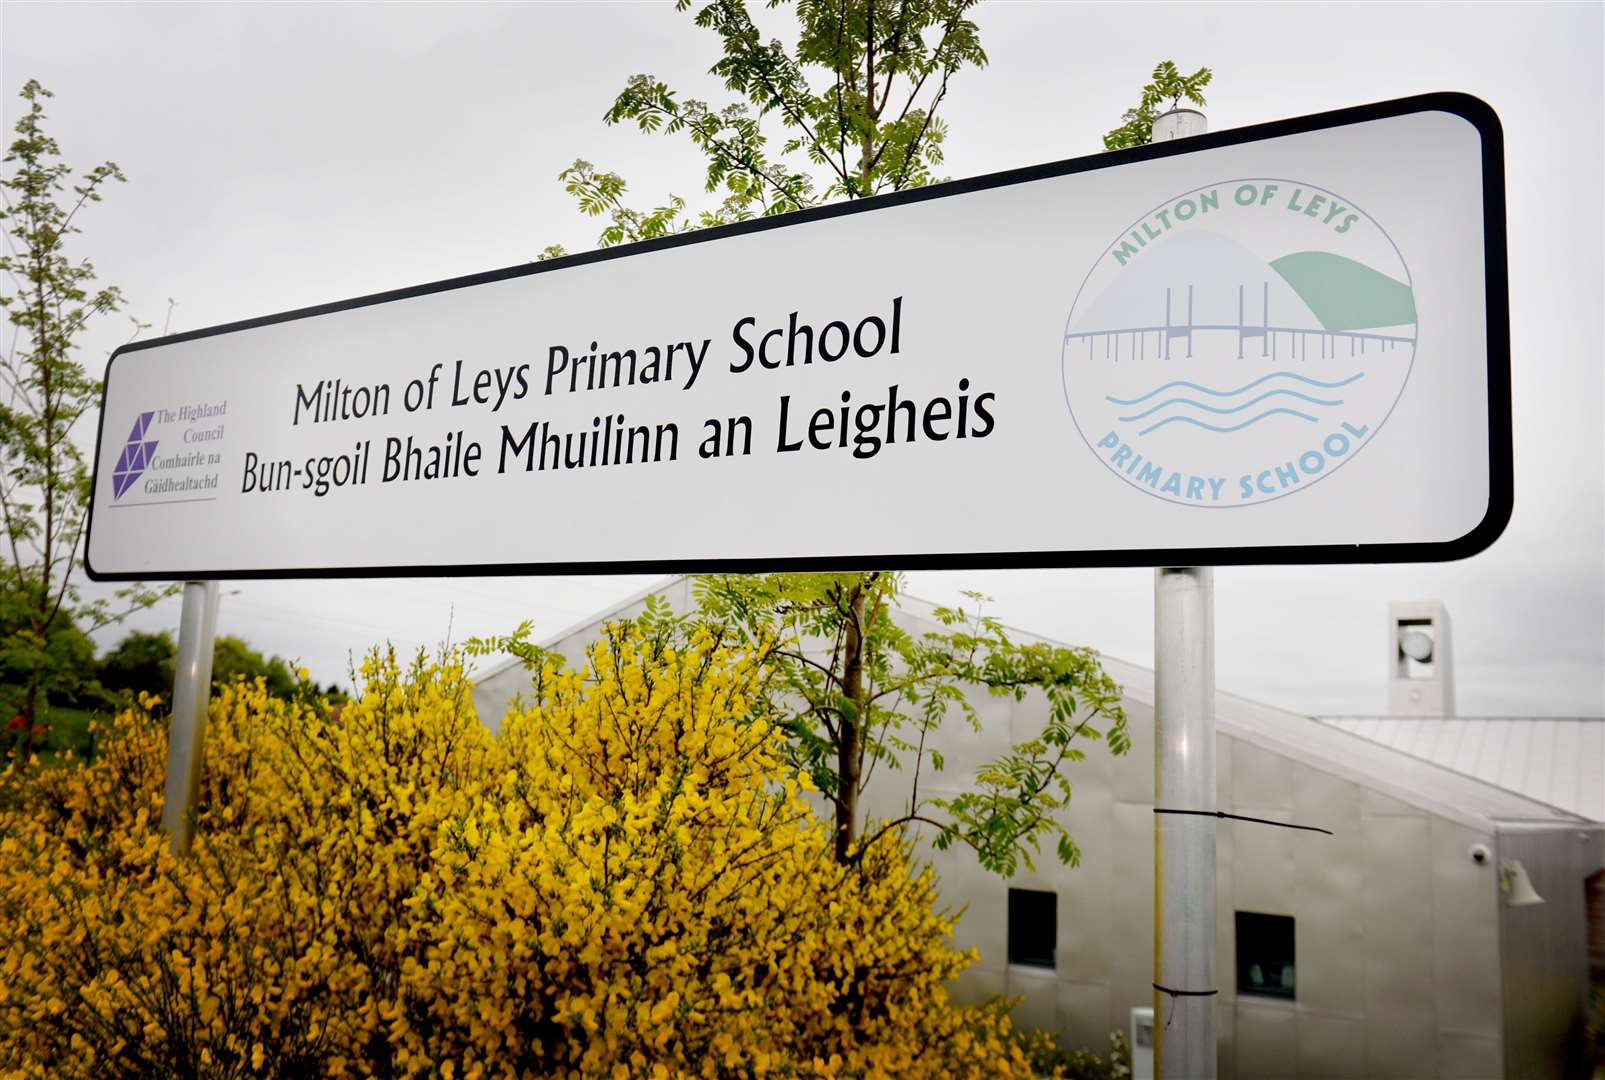 Milton of Leys Primary School.